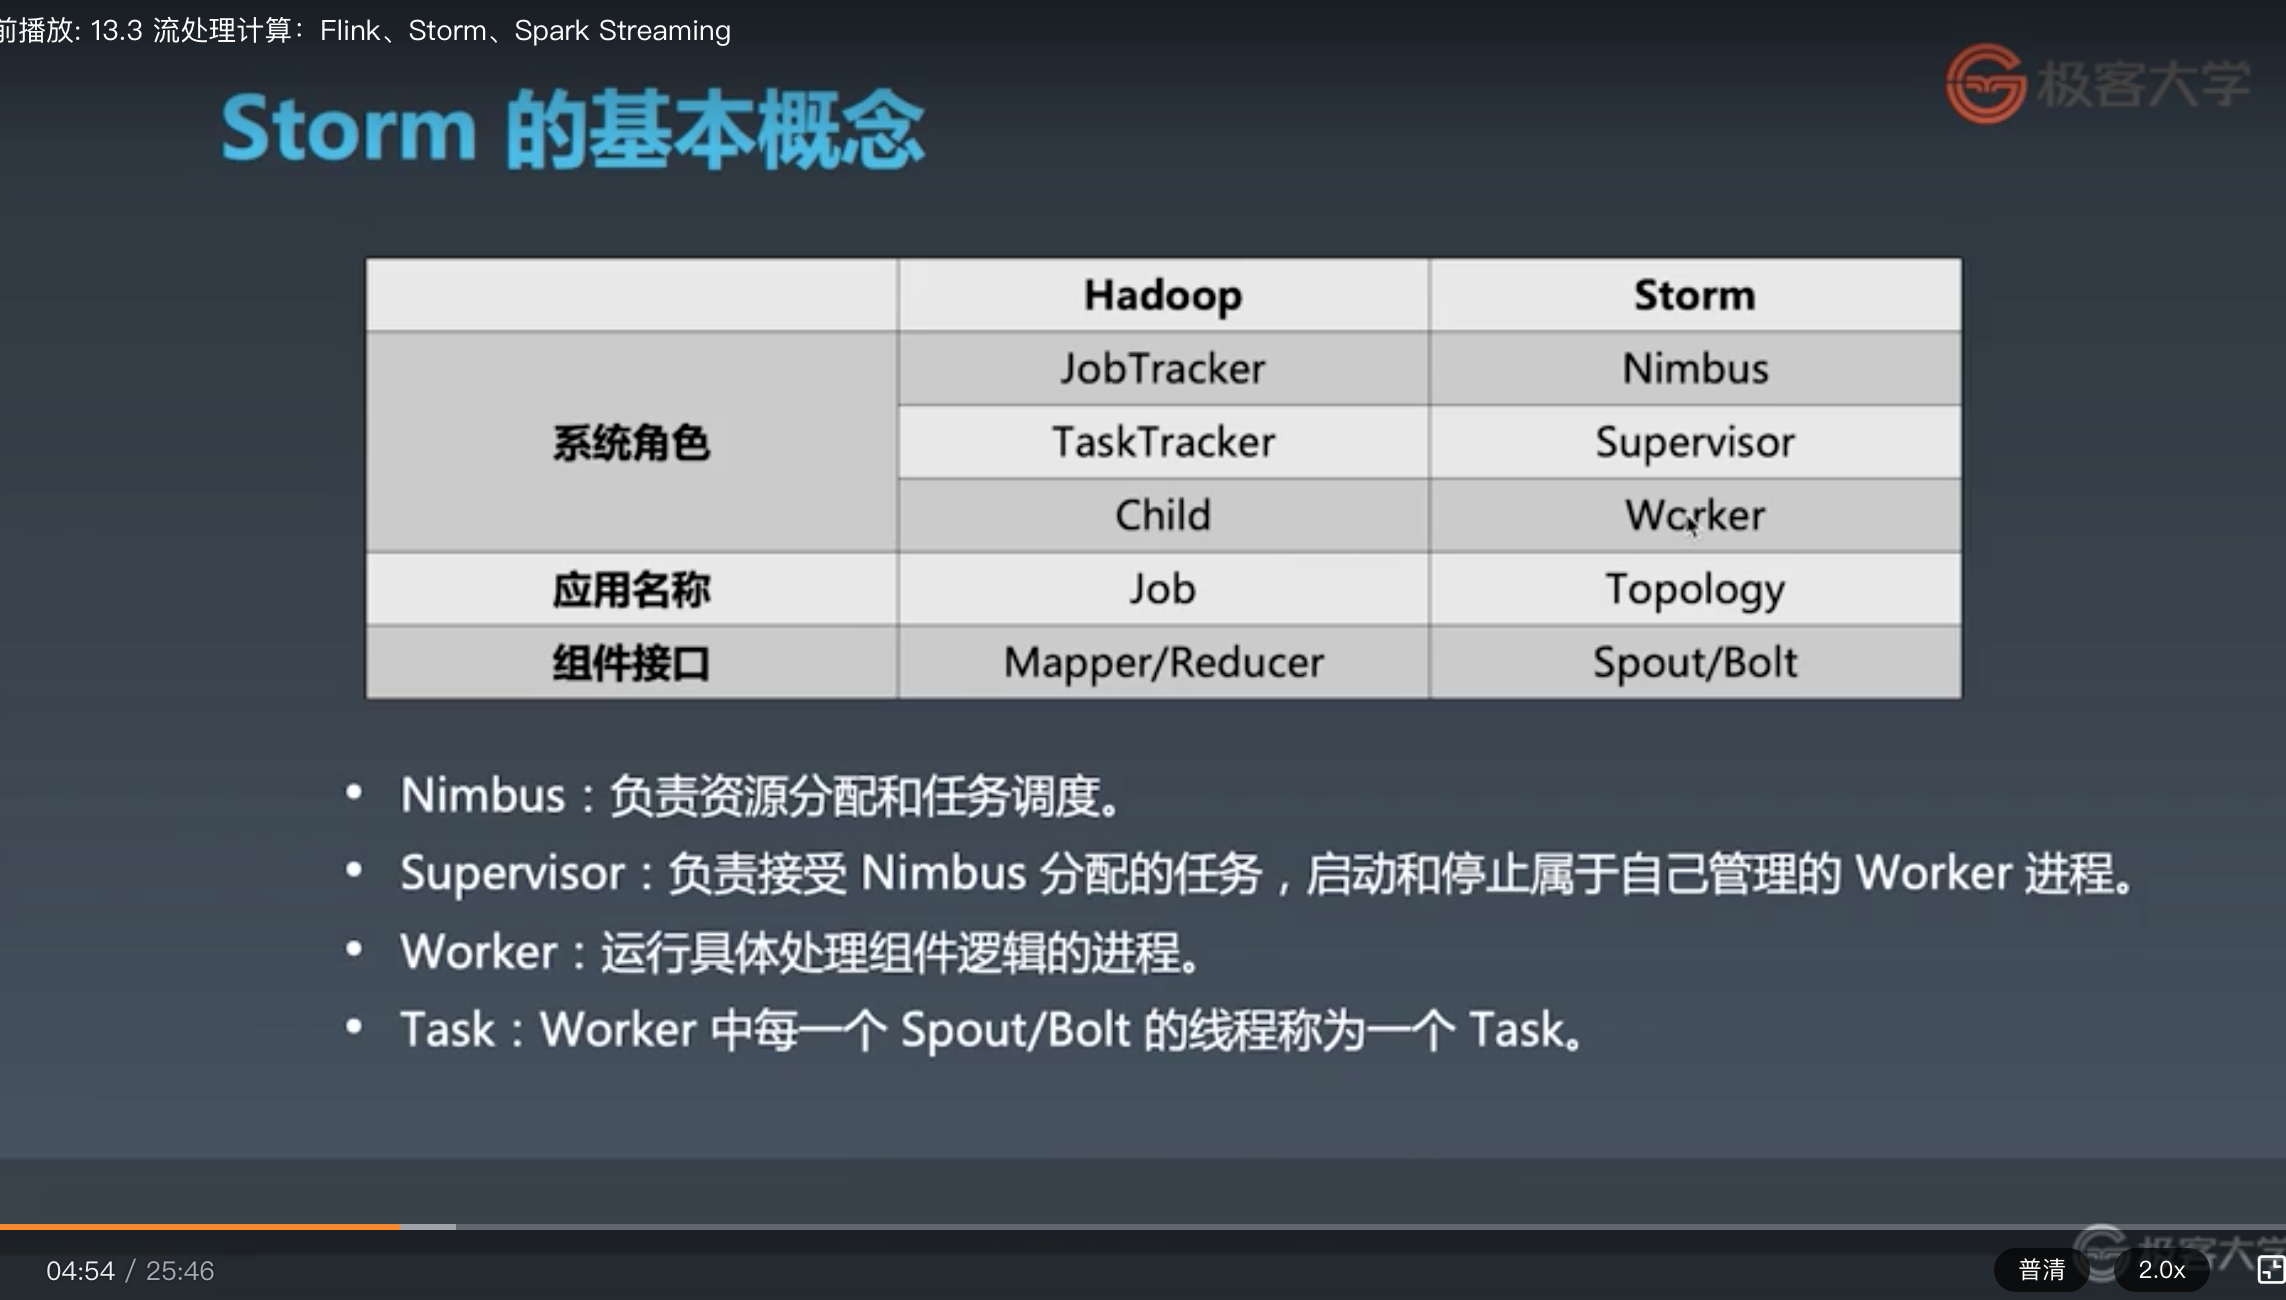 13.3-Storm与Hadoop角色对比.png